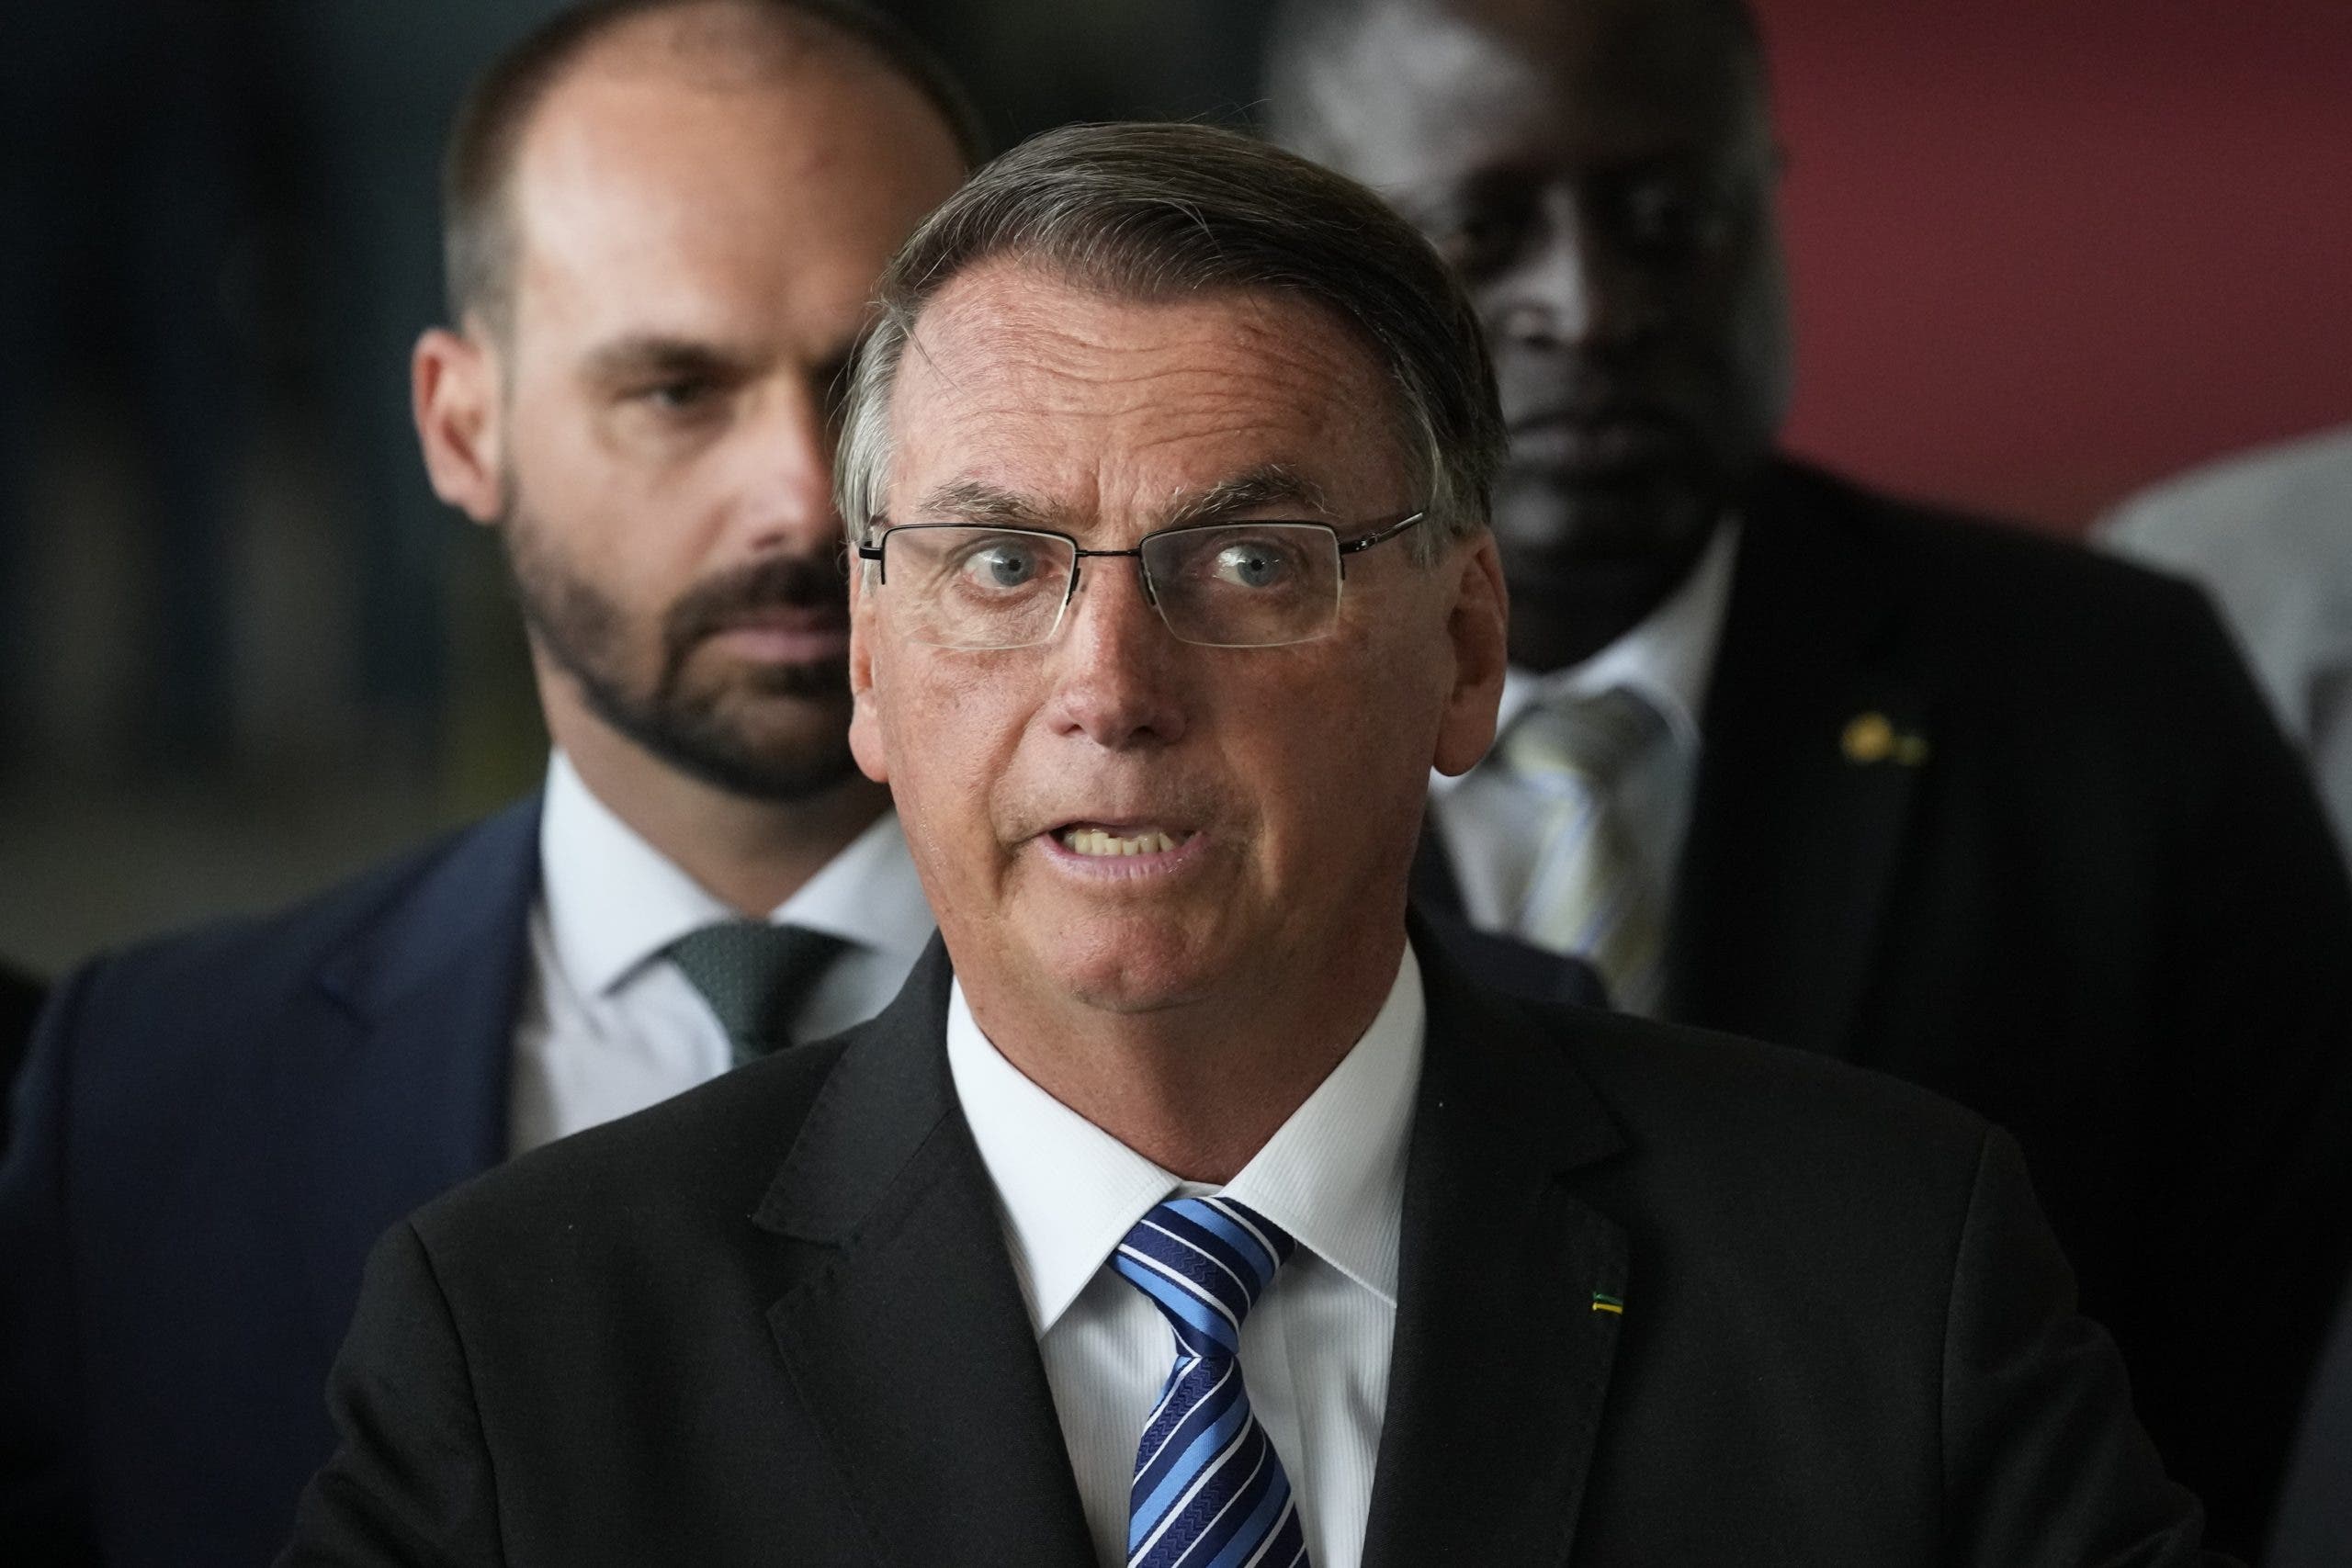 Bolsonaro dice a Supremo Tribunal que la elección «se acabó»